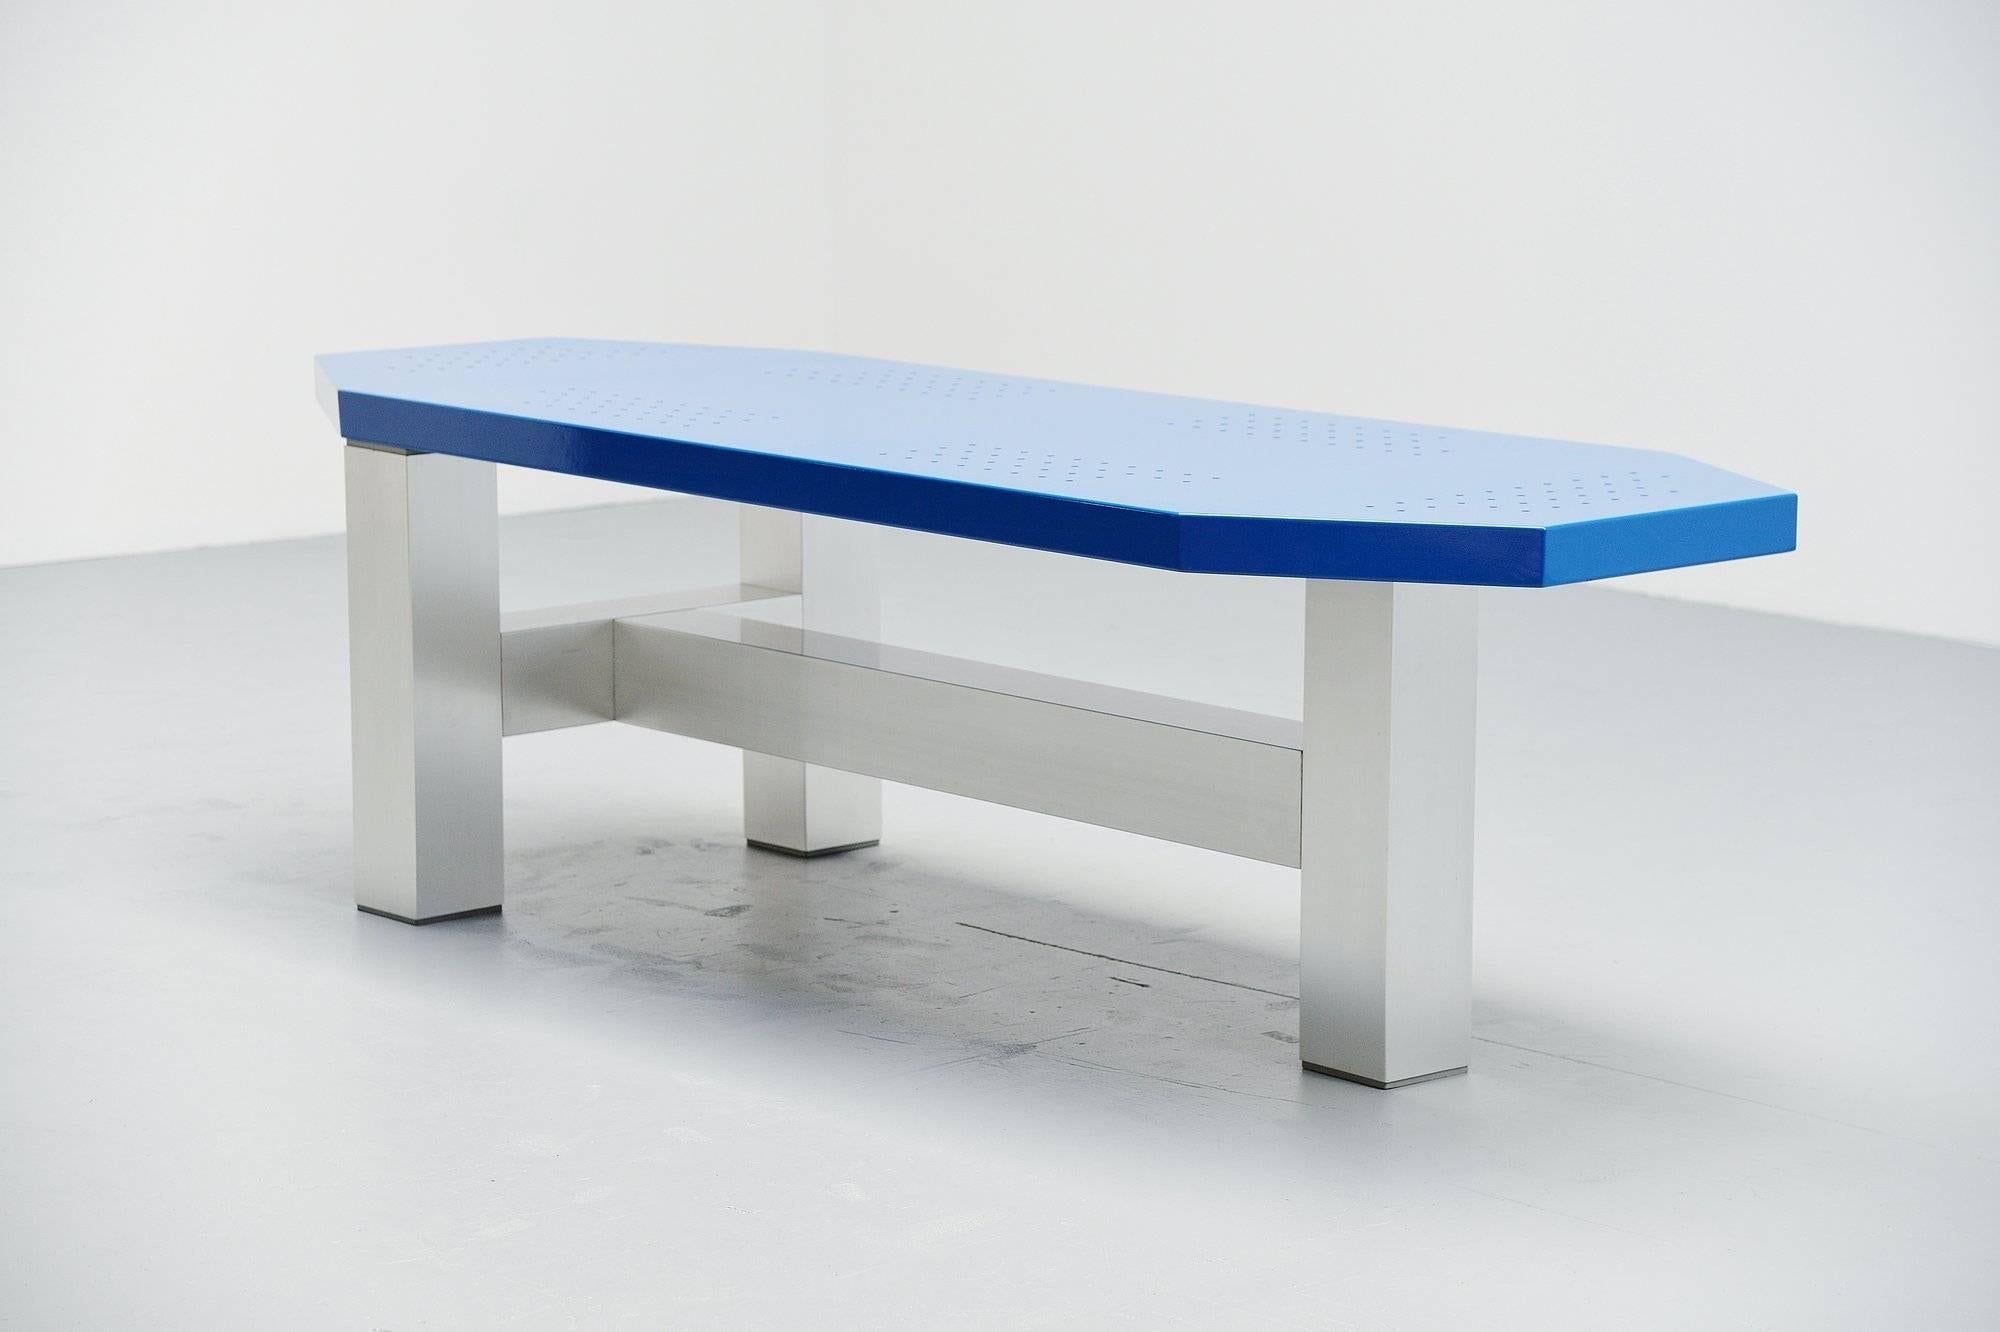 Rare table moderniste conçue par Martin Visser et Joke van der Heyden, fabriquée par 't Spectrum Bergeyk 1988. Cette table porte le numéro de modèle TE20, qui est la plus grande taille. Elle a une base en aluminium et un plateau bleu peint à froid